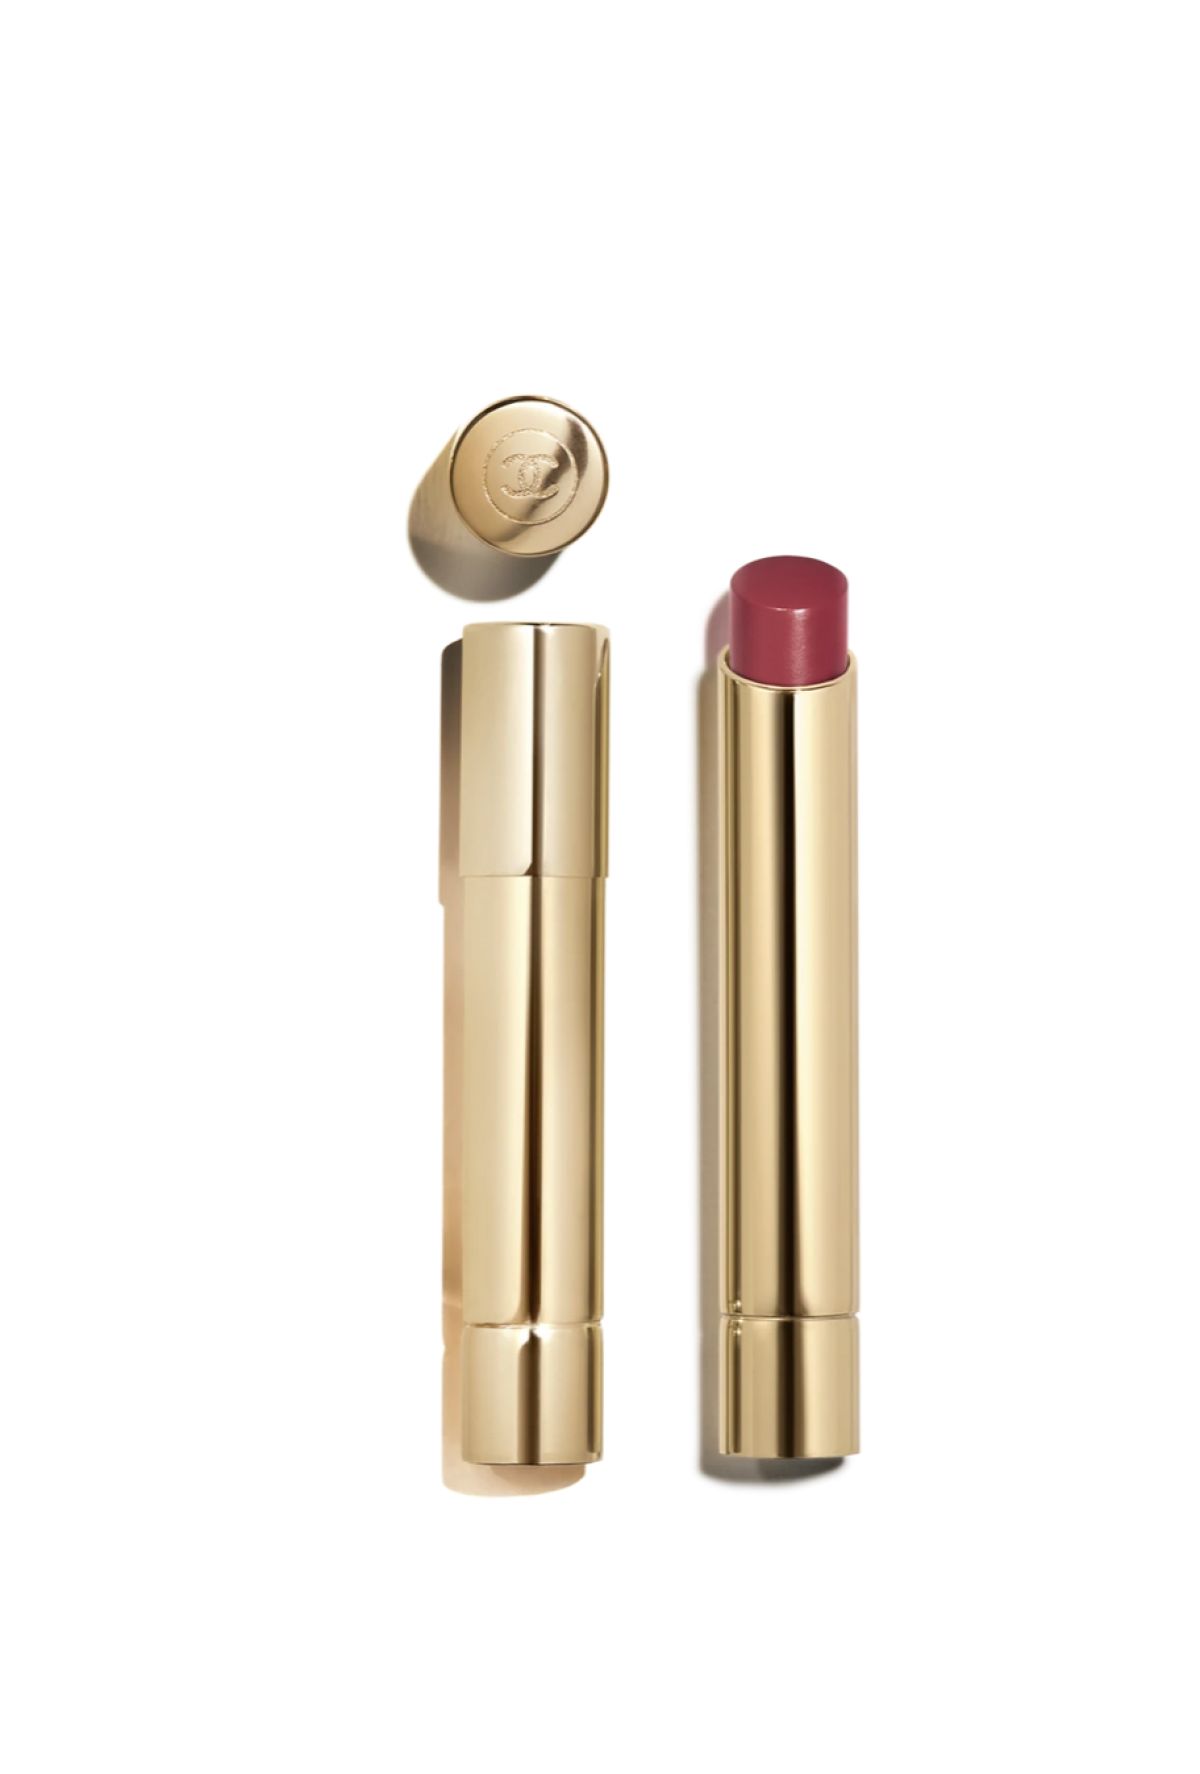 Chanel 832 Rouge Libre Recharge de rouge à lèvre Femme